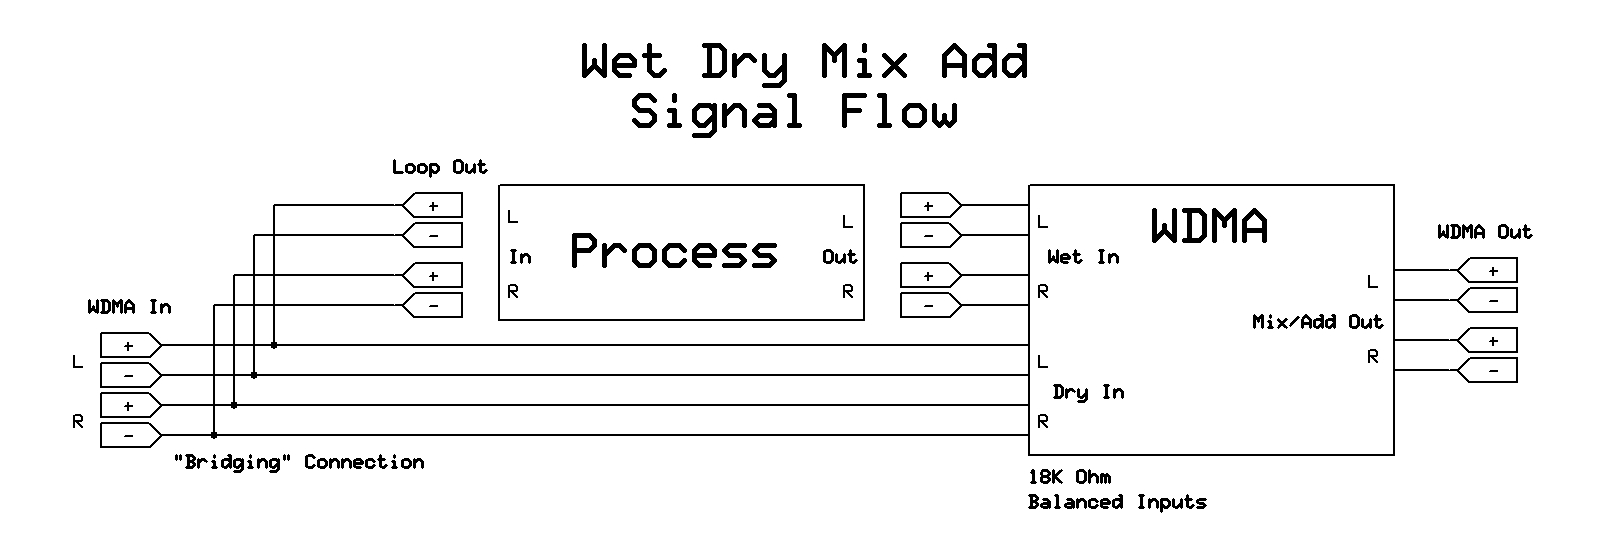 Wet_Dry_Mix_Add_WDMA_Signal_Flow.jpg